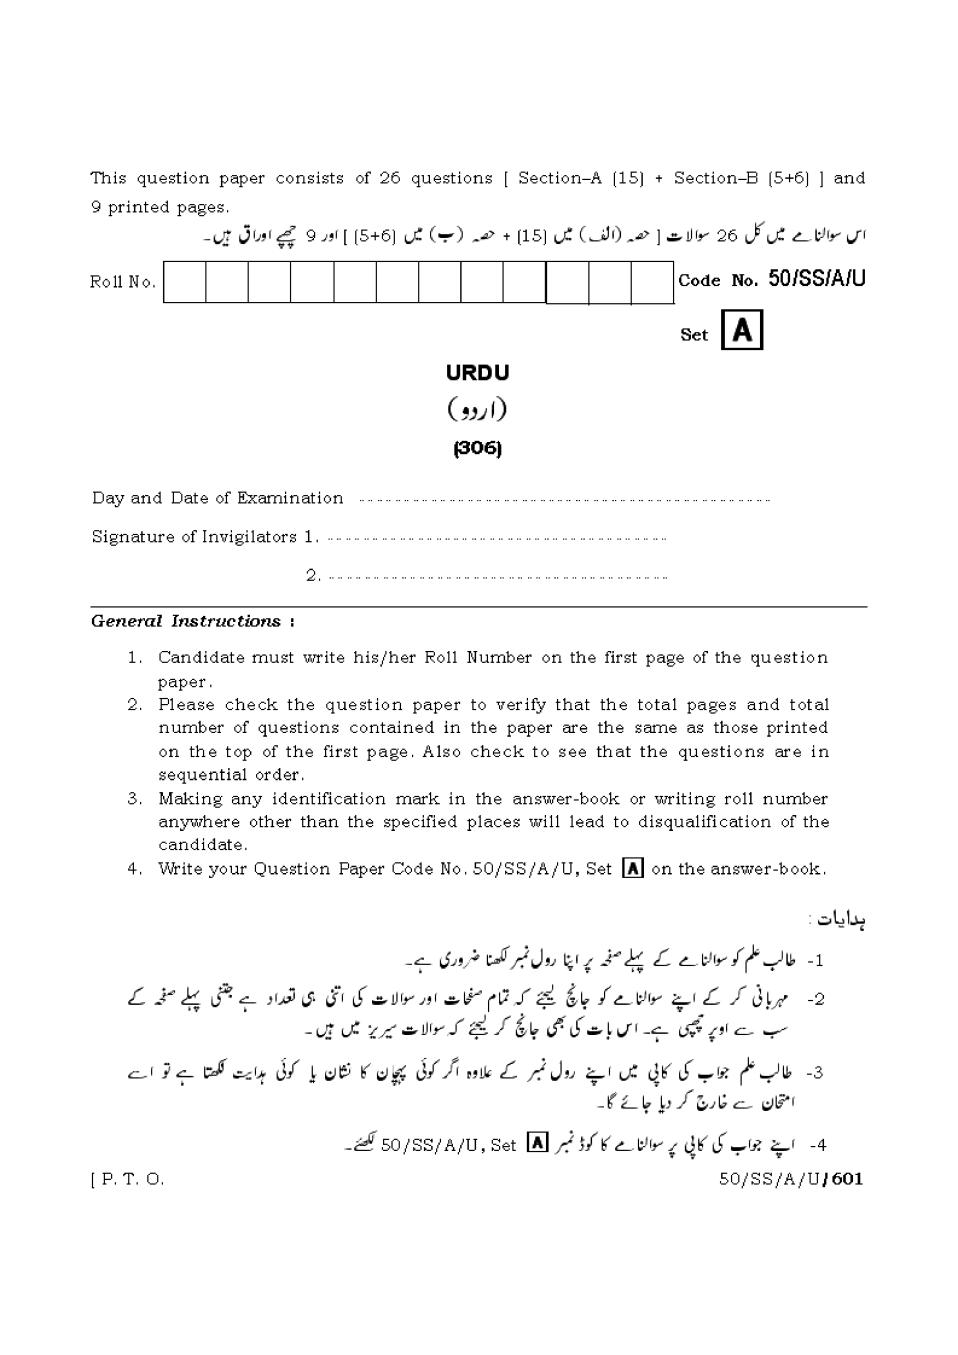 NIOS Class 12 Question Paper Apr 2015 - Urdu - Page 1